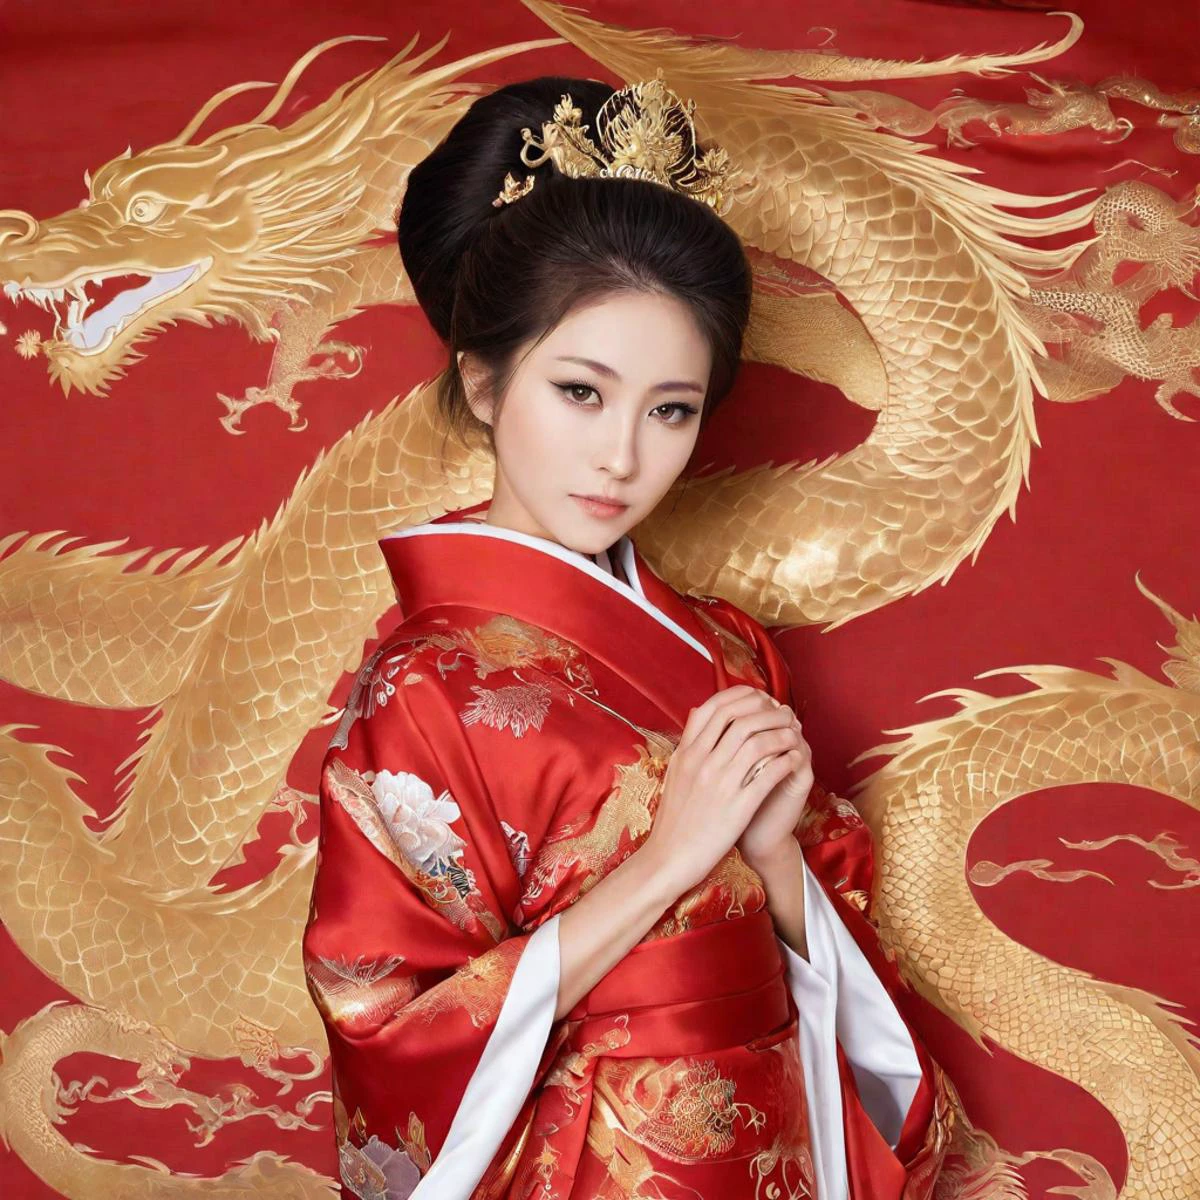 身着带有金龙图案的红色丝绸和服的美丽日本公主